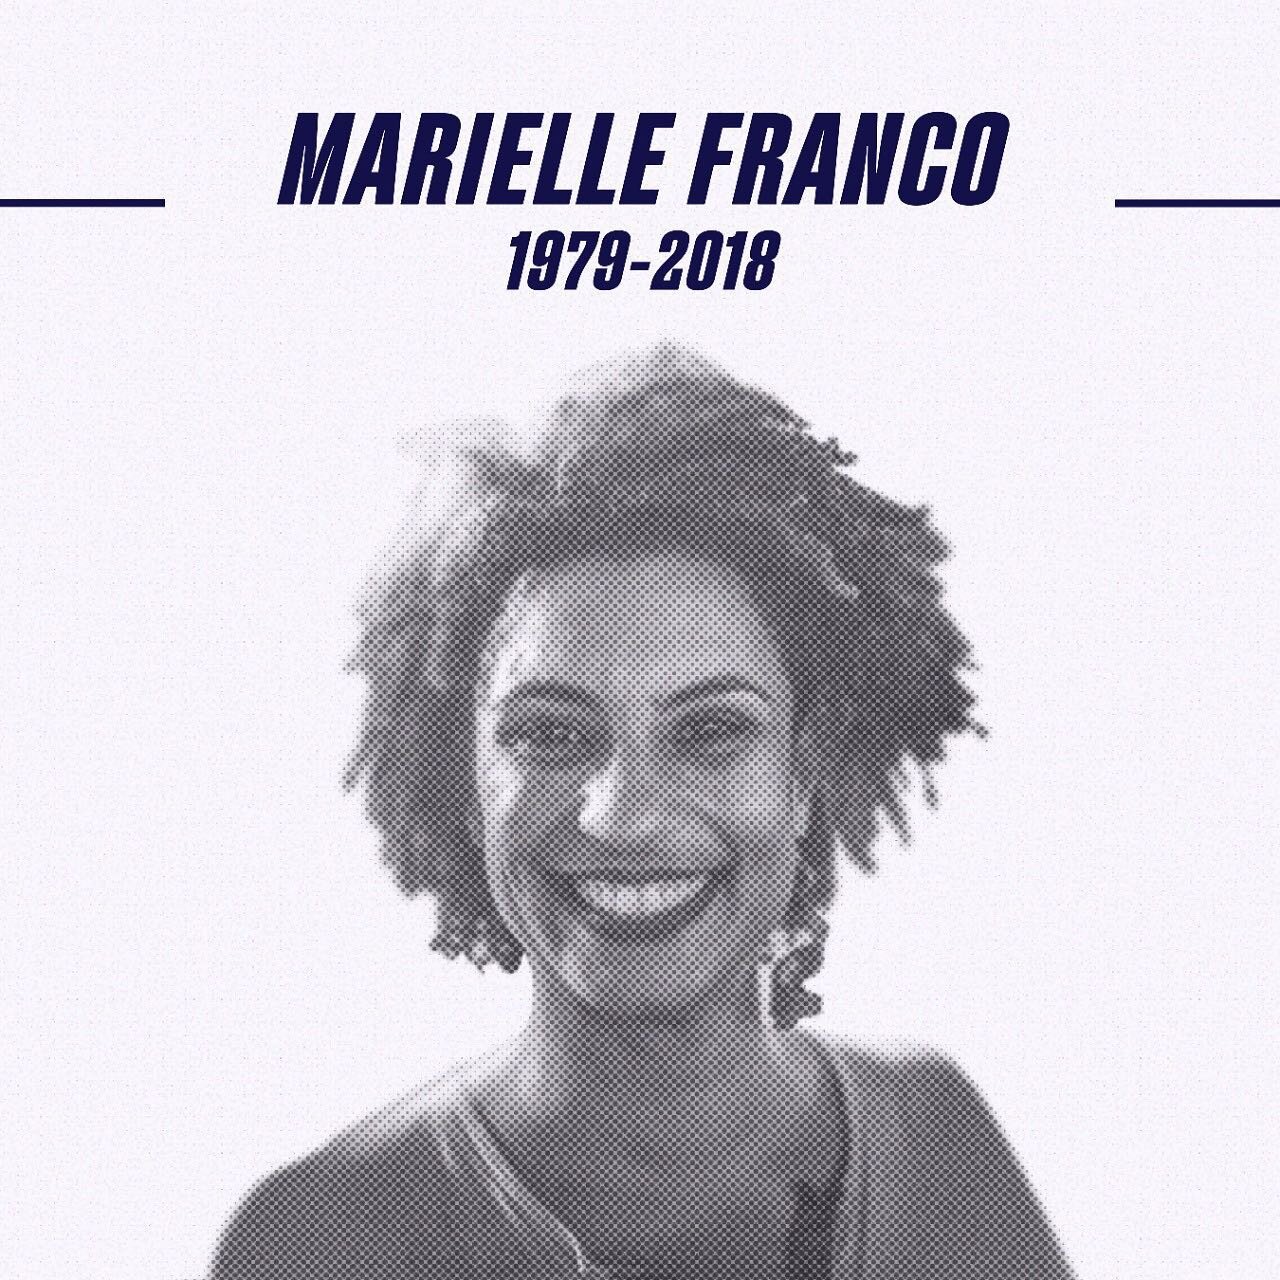 Hace 3 a&ntilde;os asesinaron a #MarielleFranco, feminista y defensora de los DDHH. Marielle es un simbolo de resistencia y esperanza. Dedic&oacute; su vida a luchar por los derechos de mujeres y NNA. Hoy la recordamos con dolor, pero convencidas de 